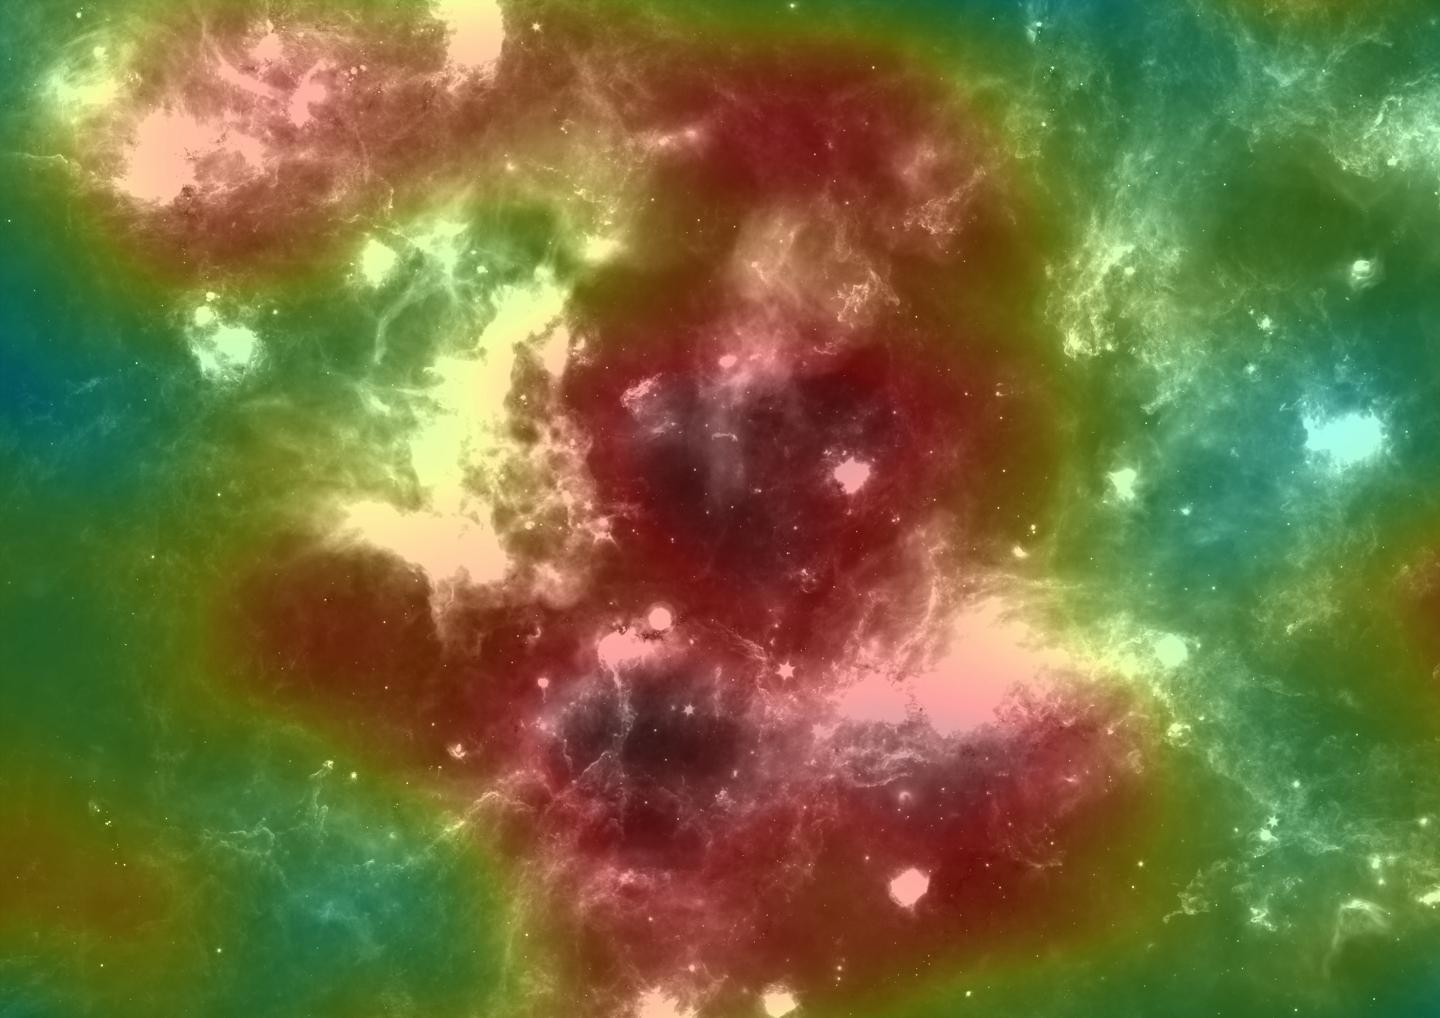 Cygnus Cocoon, região da Constelação de Cygnus que abriga uma fonte de raios cósmicos de alta energia (Foto: IFJ PAN / HAWC)